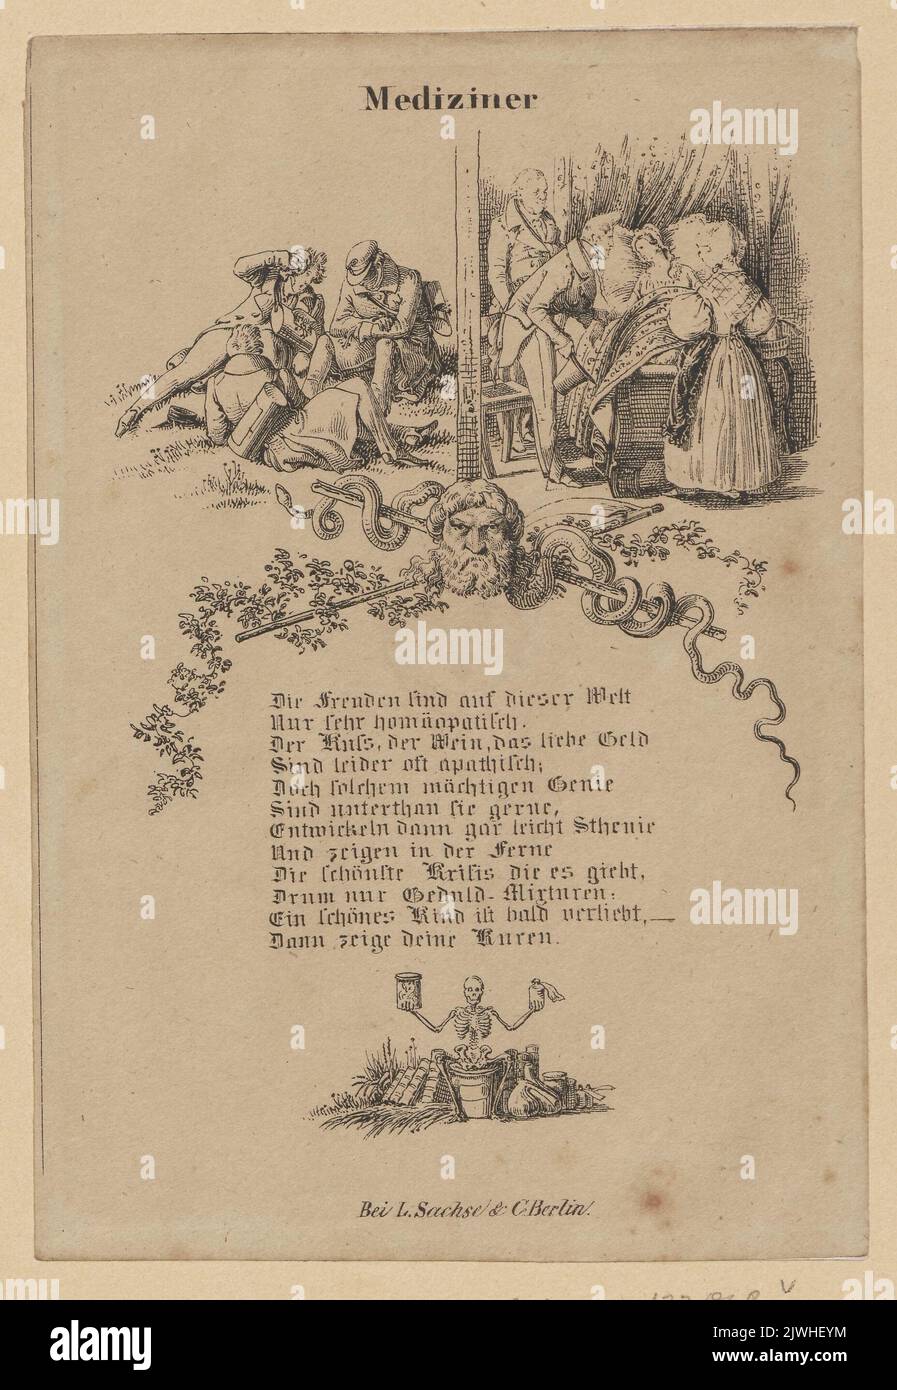 Ilustracja do wiersza satyrycznego 'Mediziner'. Menzel, Adolph (1815-1905), graphic artist, Sachse, Ludwig & Co (Berlin ; zakład litograficzny, wydawnictwo ; 1827-1949), publisher Stock Photo